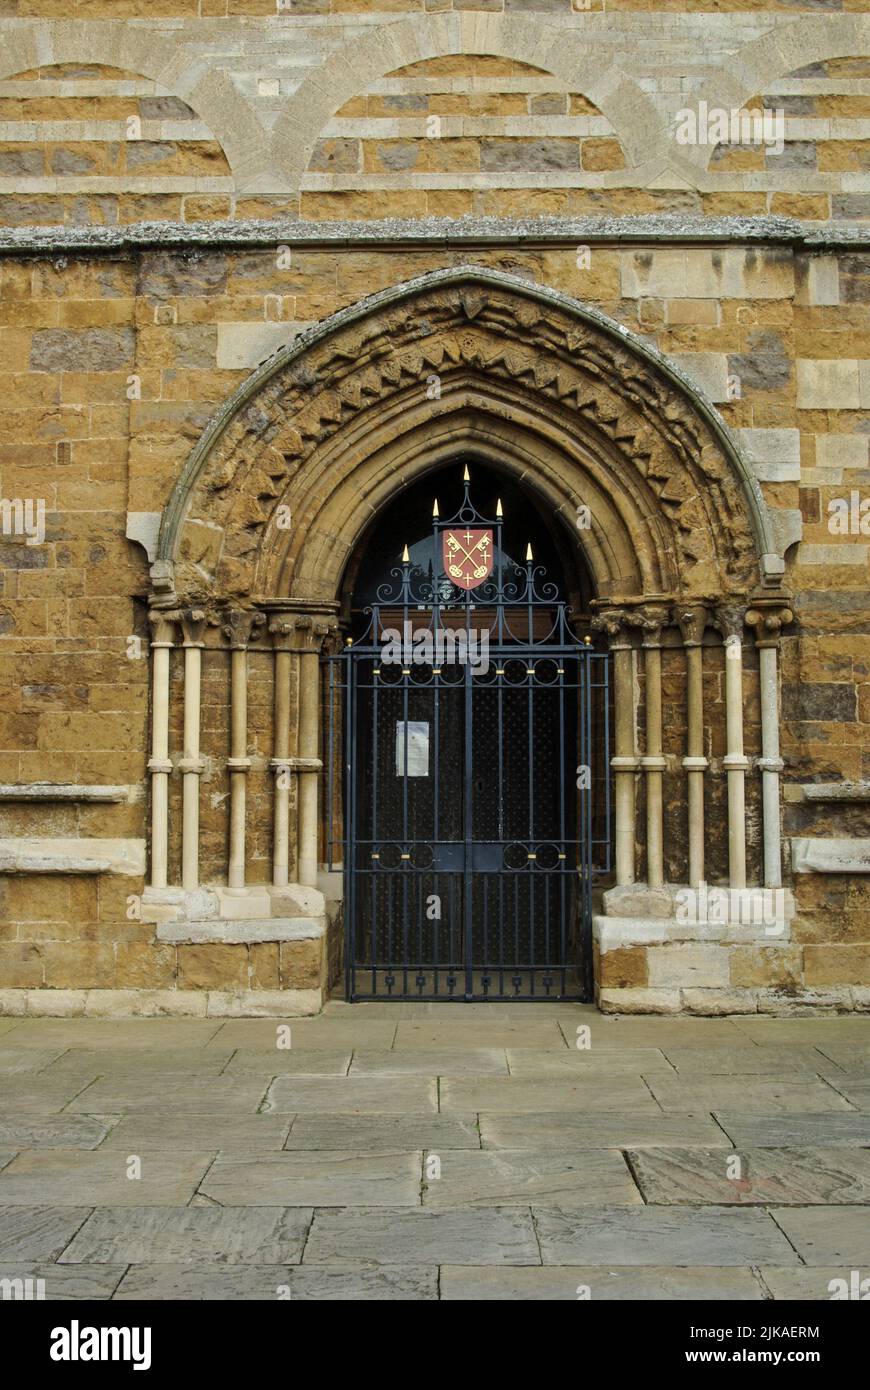 Ingresso alla chiesa della Santissima Trinità, nella città di Rothwell, Northamptonshire, Regno Unito; le prime parti risalgono al 13th secolo. Foto Stock